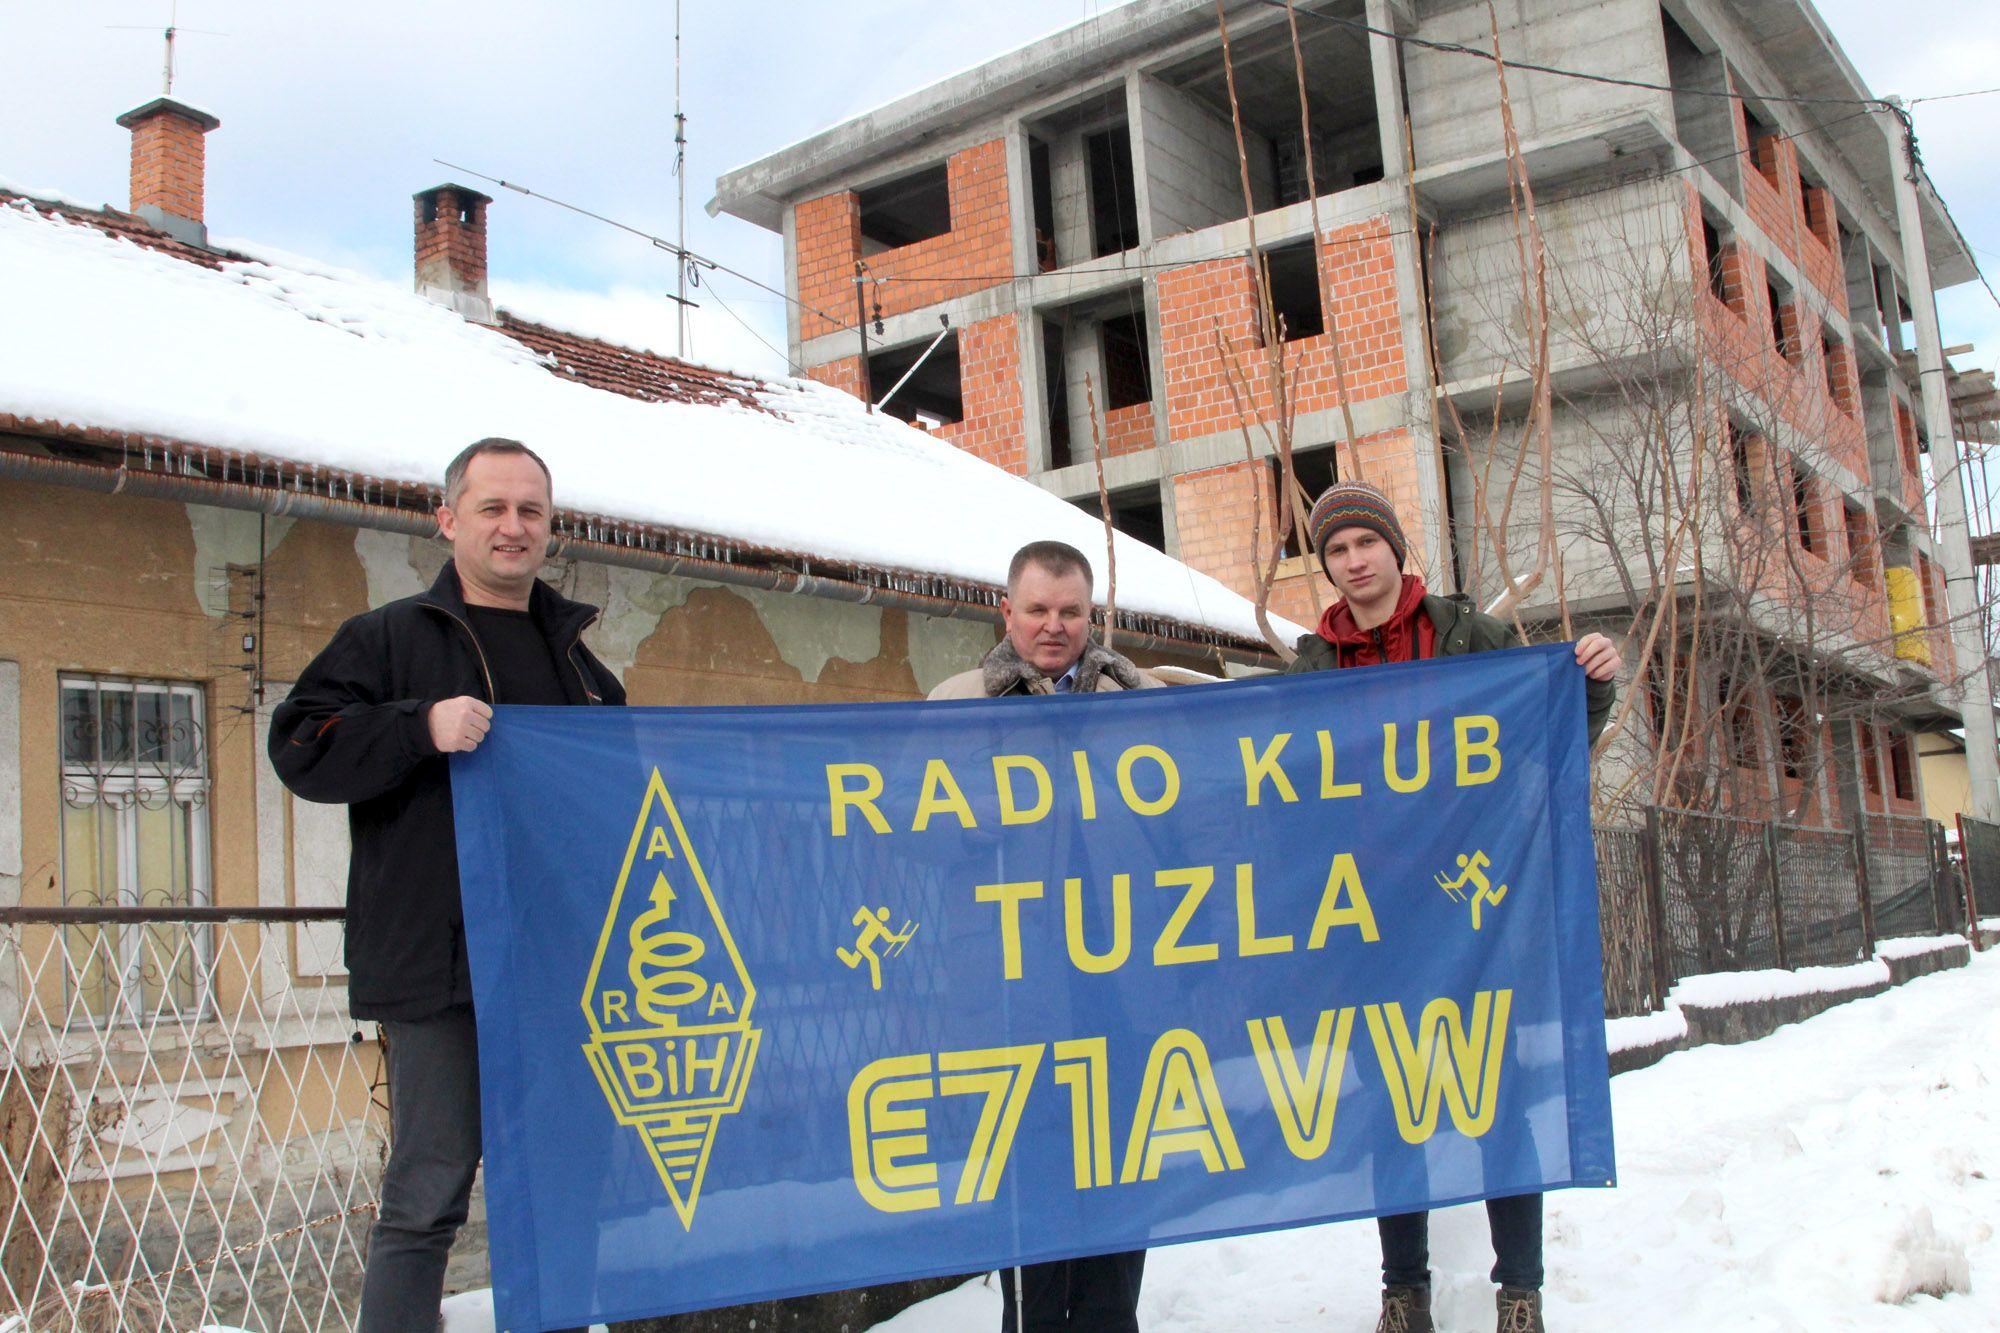 Radioklub Tuzla proživljava najteže dane od svog osnivanja - Avaz